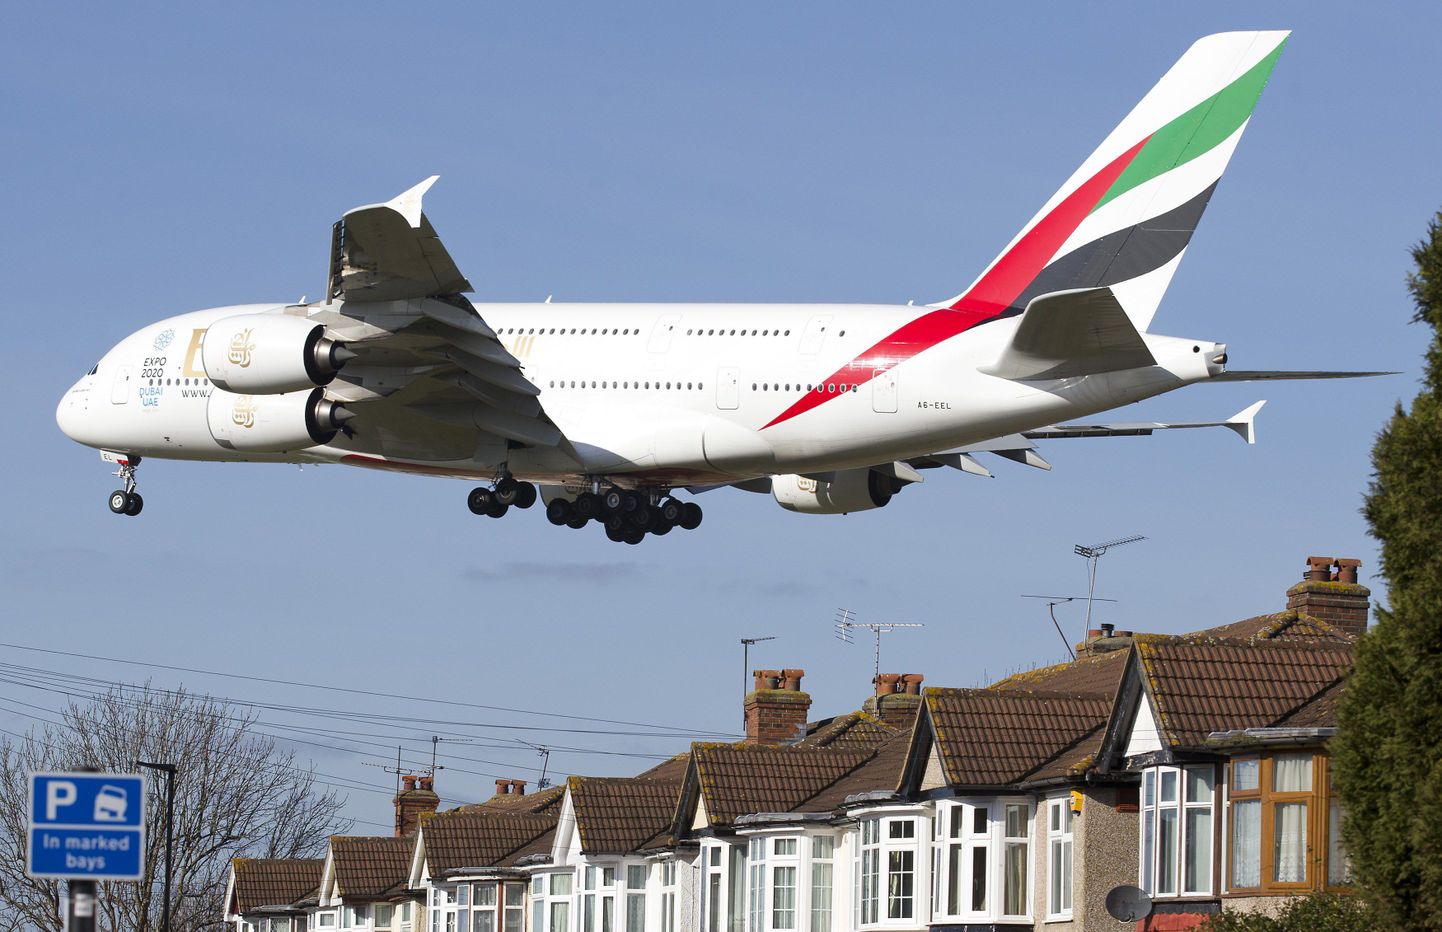 Emirates'i A380 jumbo jet Londoni Heathrow lennuväljale liginemas.